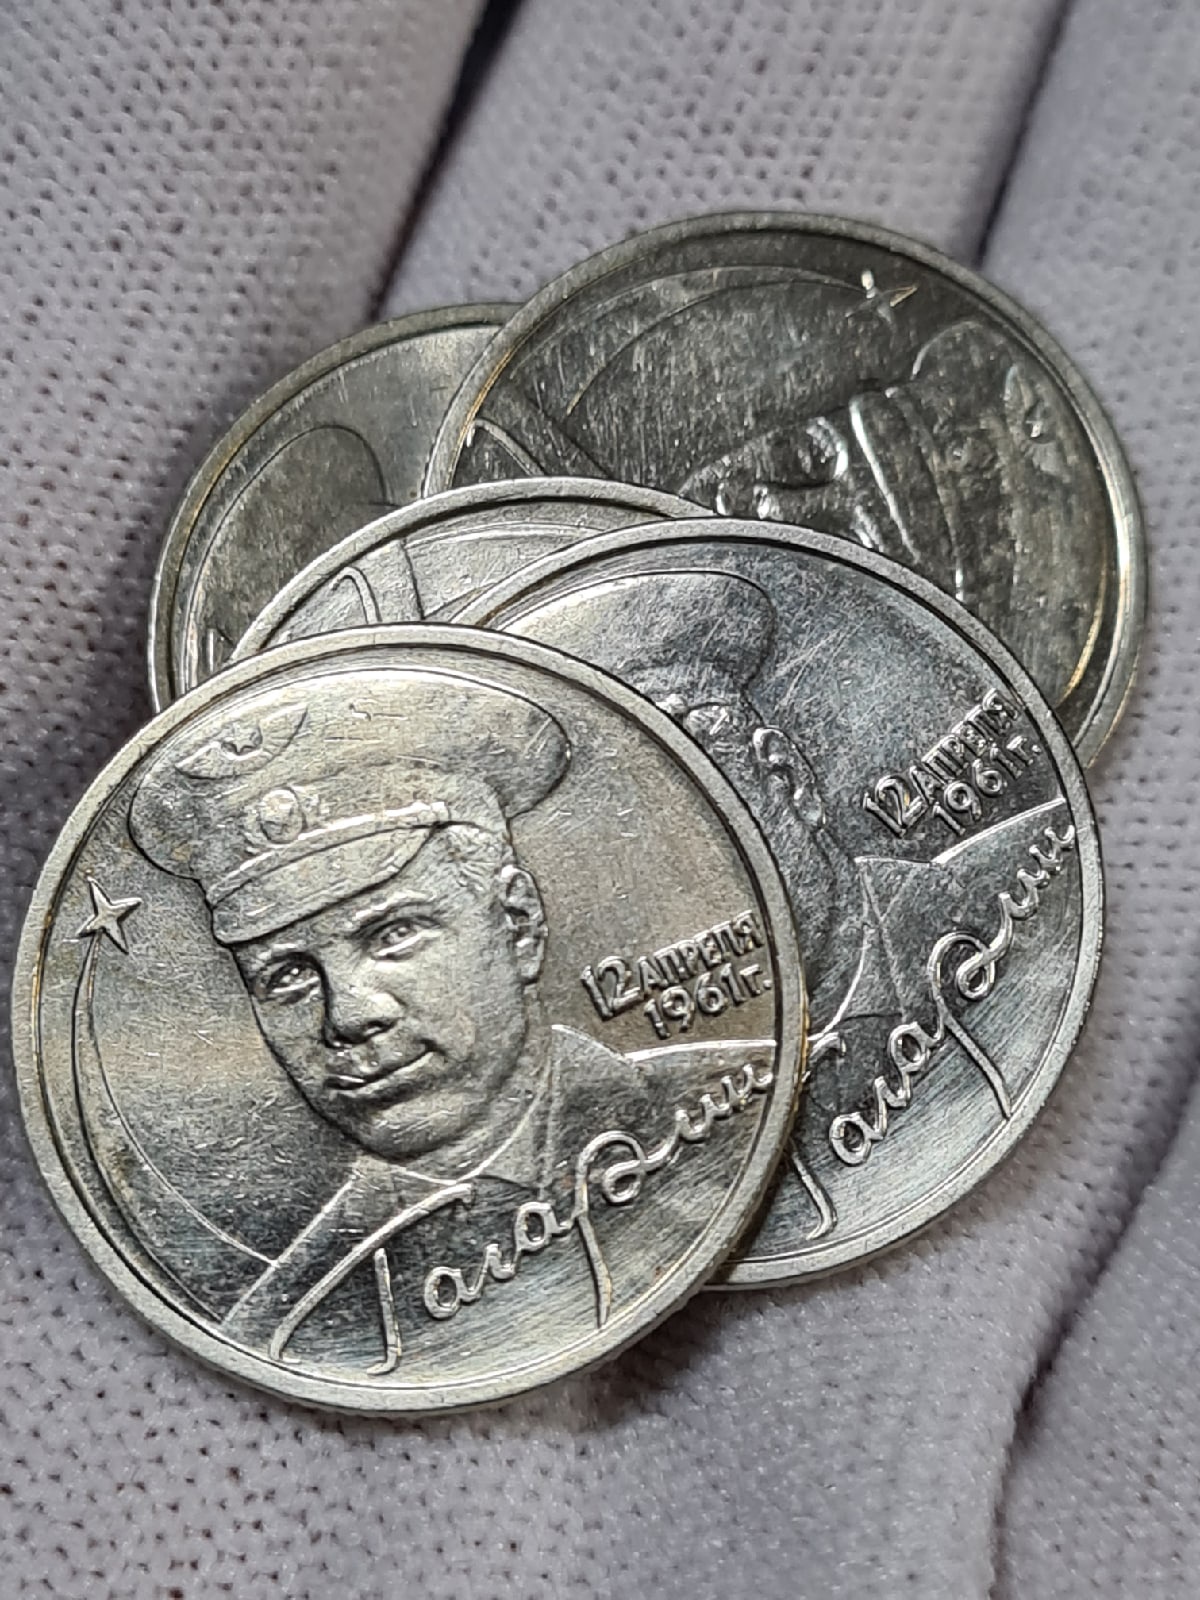 2 рубля 2001 года с гагариным